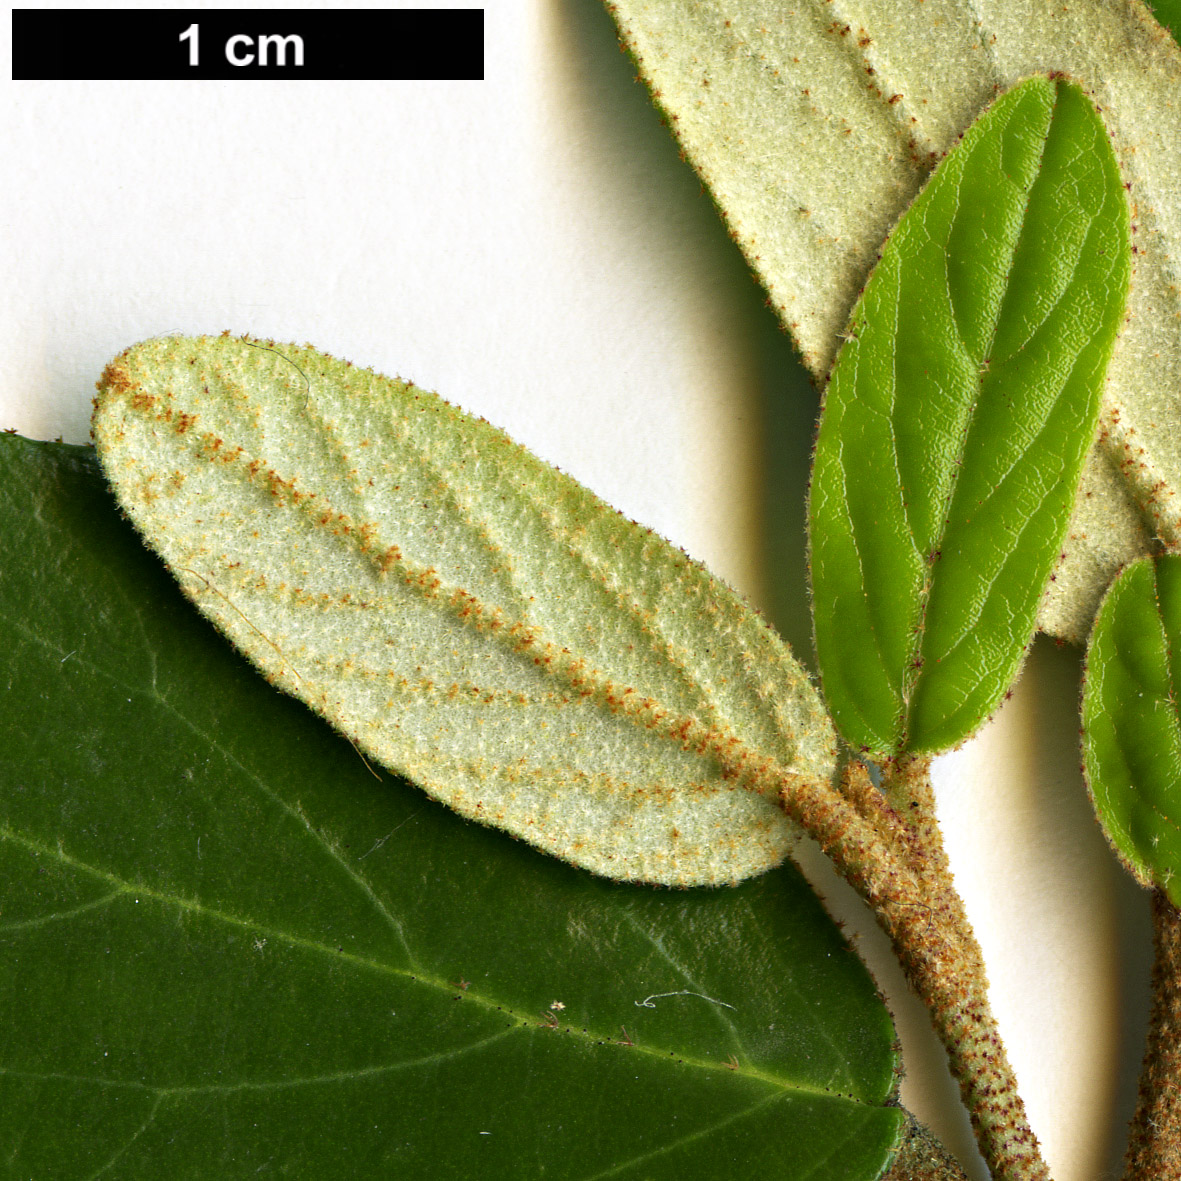 High resolution image: Family: Adoxaceae - Genus: Viburnum - Taxon: utile